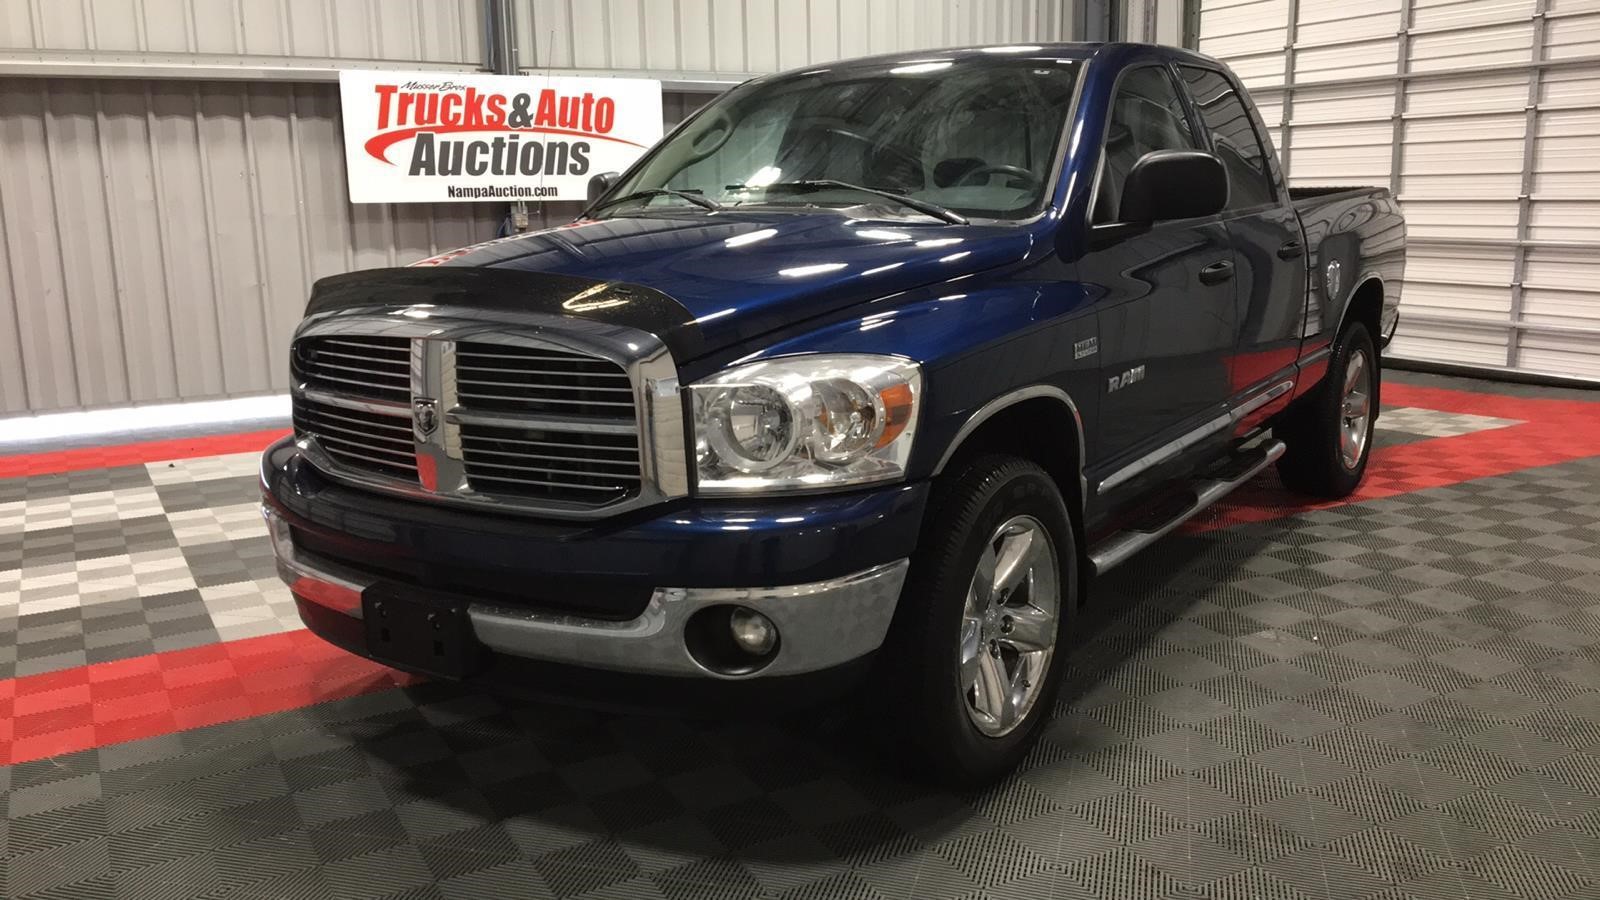 092117 Trucks & Auto Auctions Live Auction